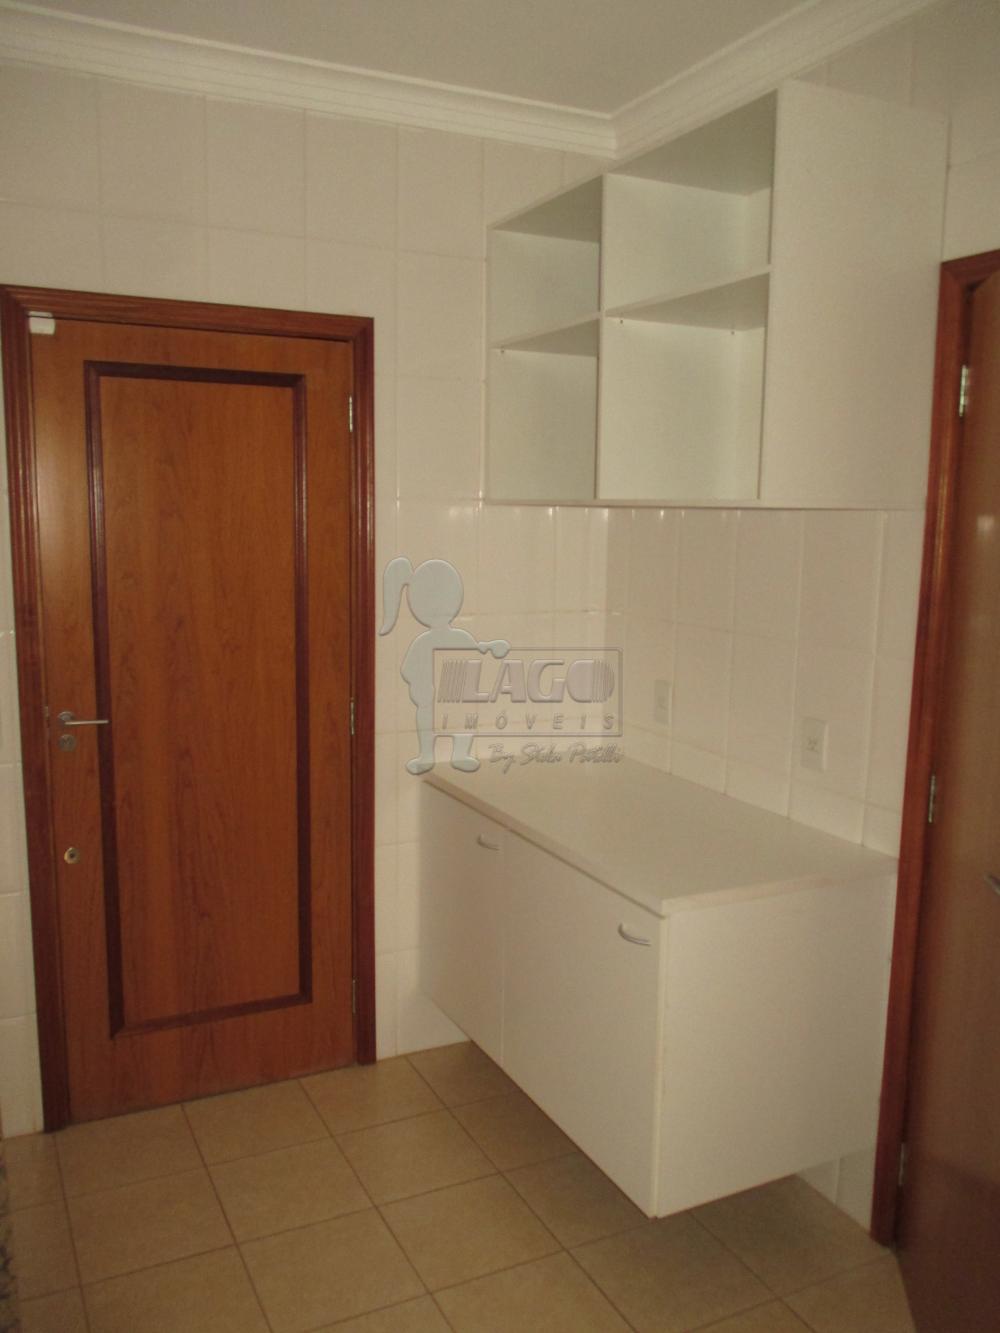 Alugar Apartamentos / Cobertura em Ribeirão Preto R$ 2.500,00 - Foto 7